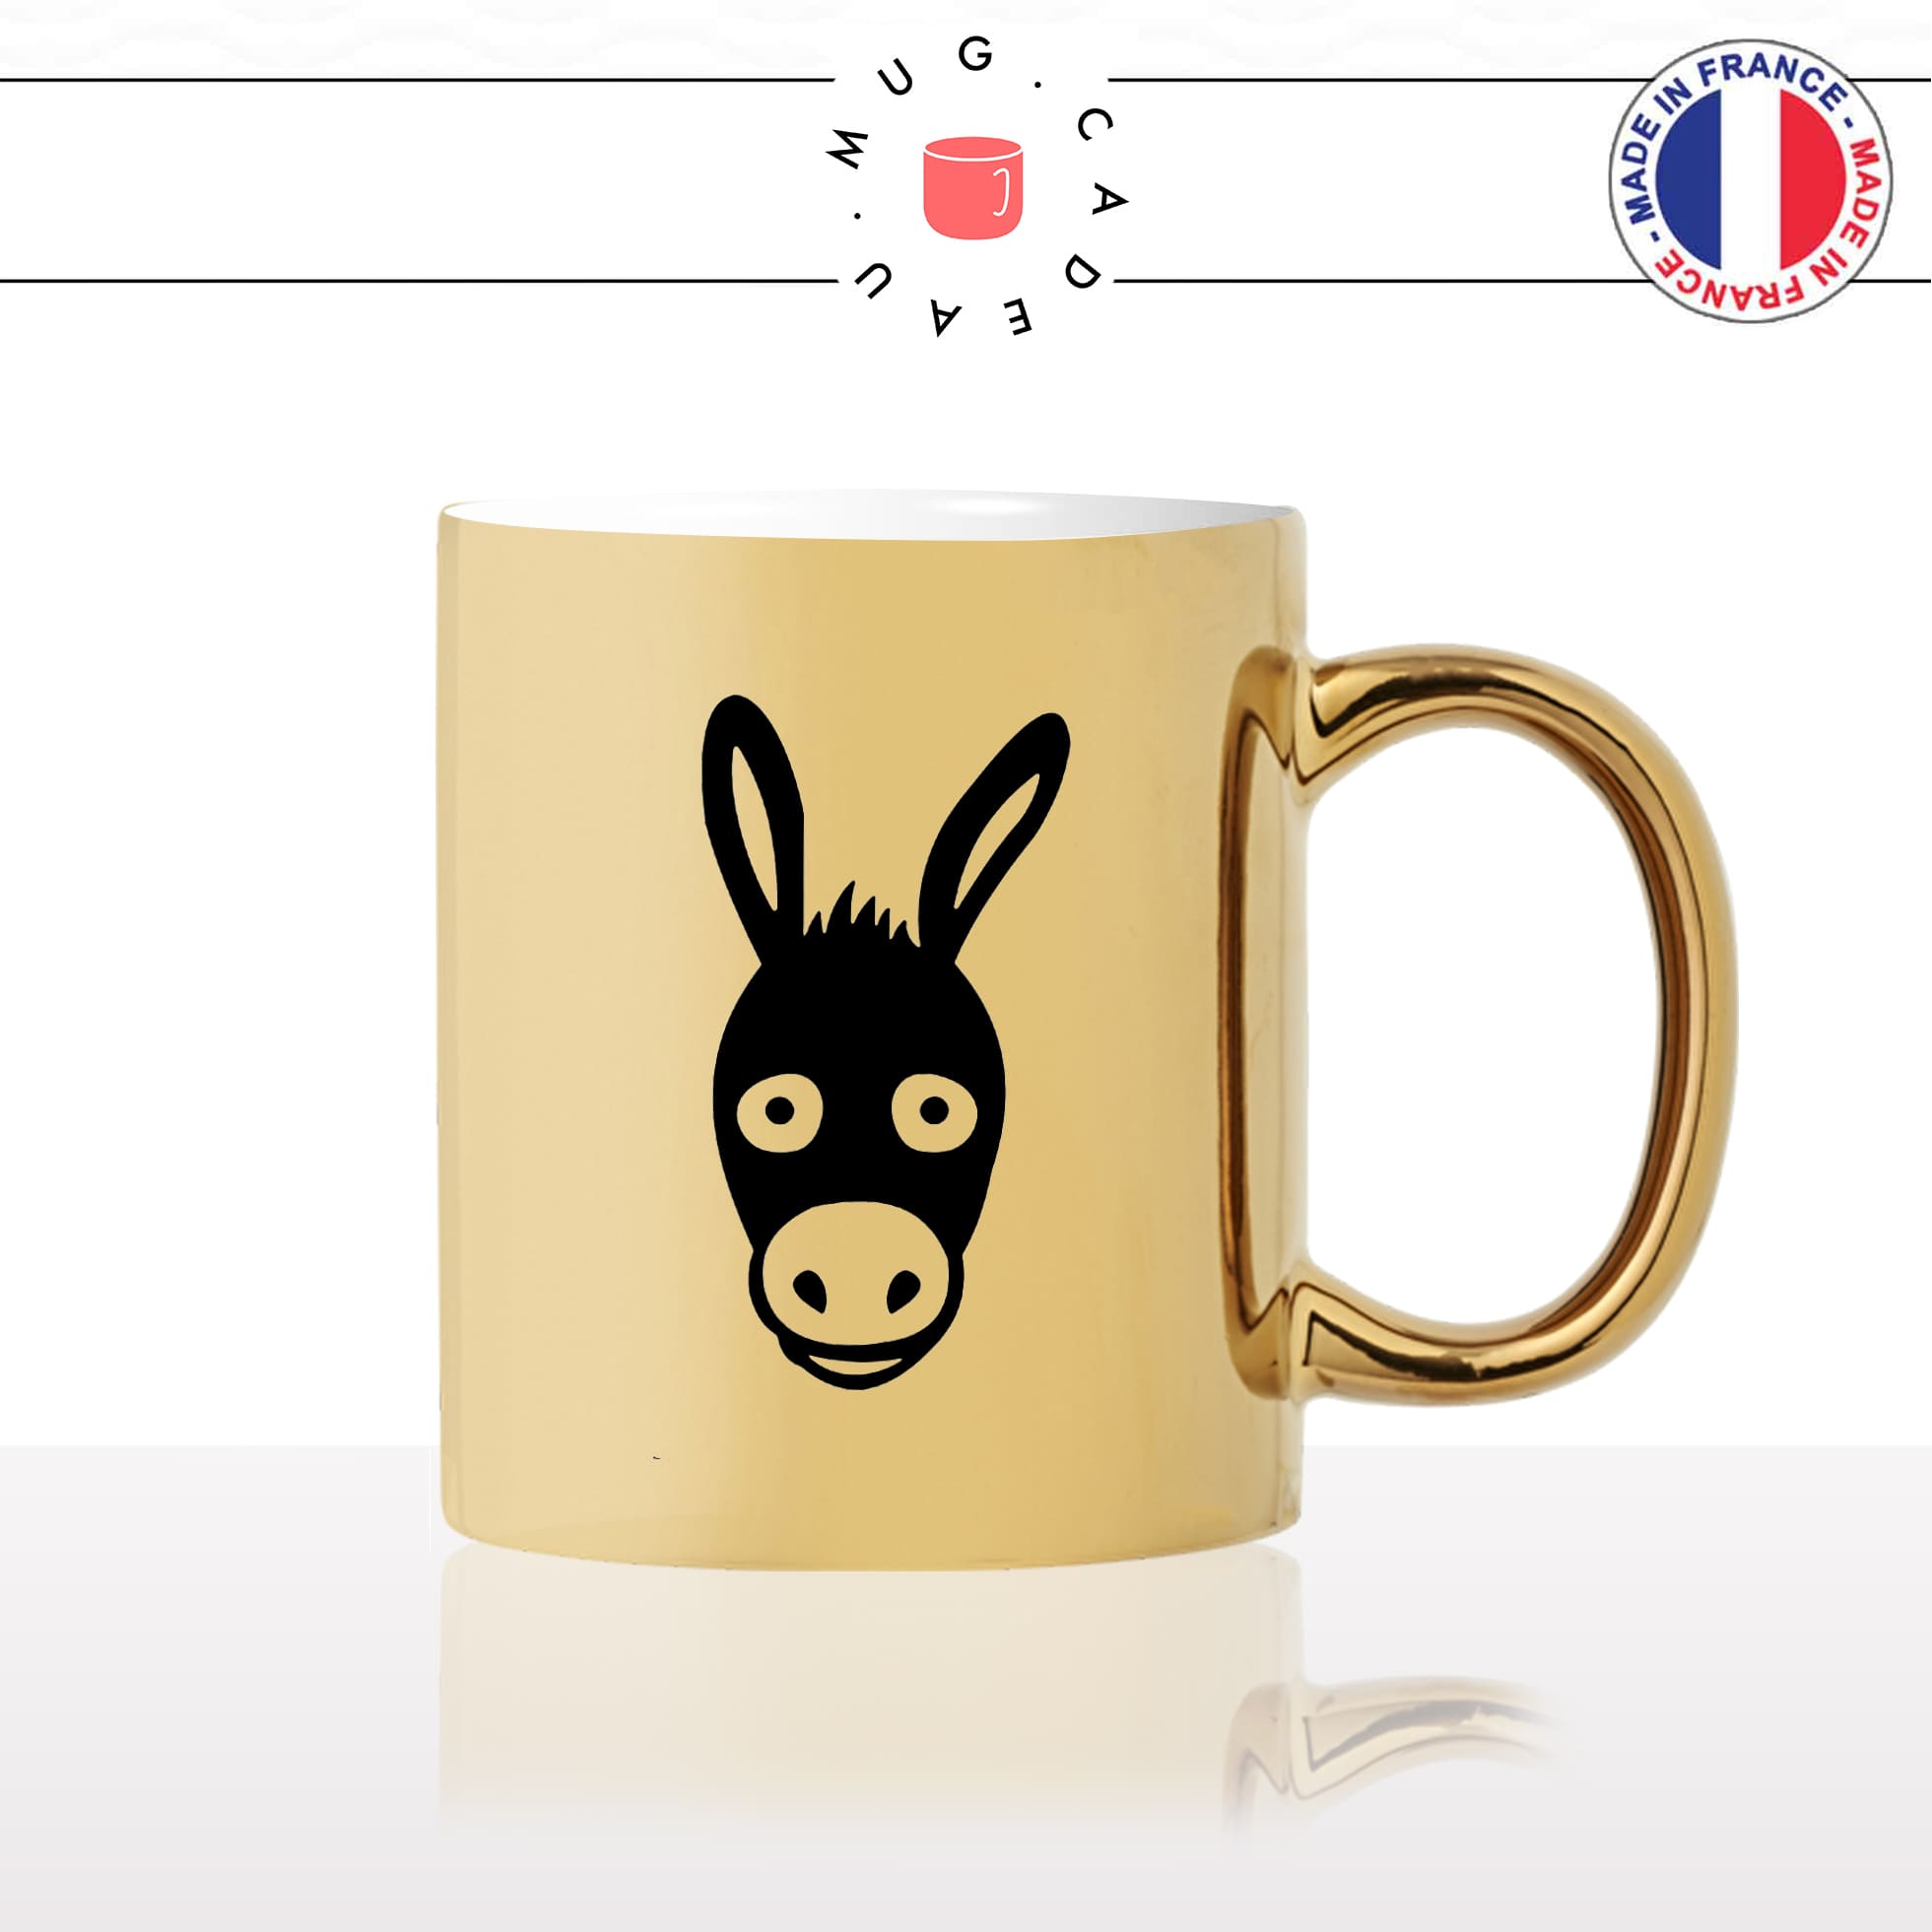 mug-tasse-or-doré-gold-dessin-tete-de-mule-cheval-ane-expression-animaux-humour-fun-idée-cadeau-originale-cool2